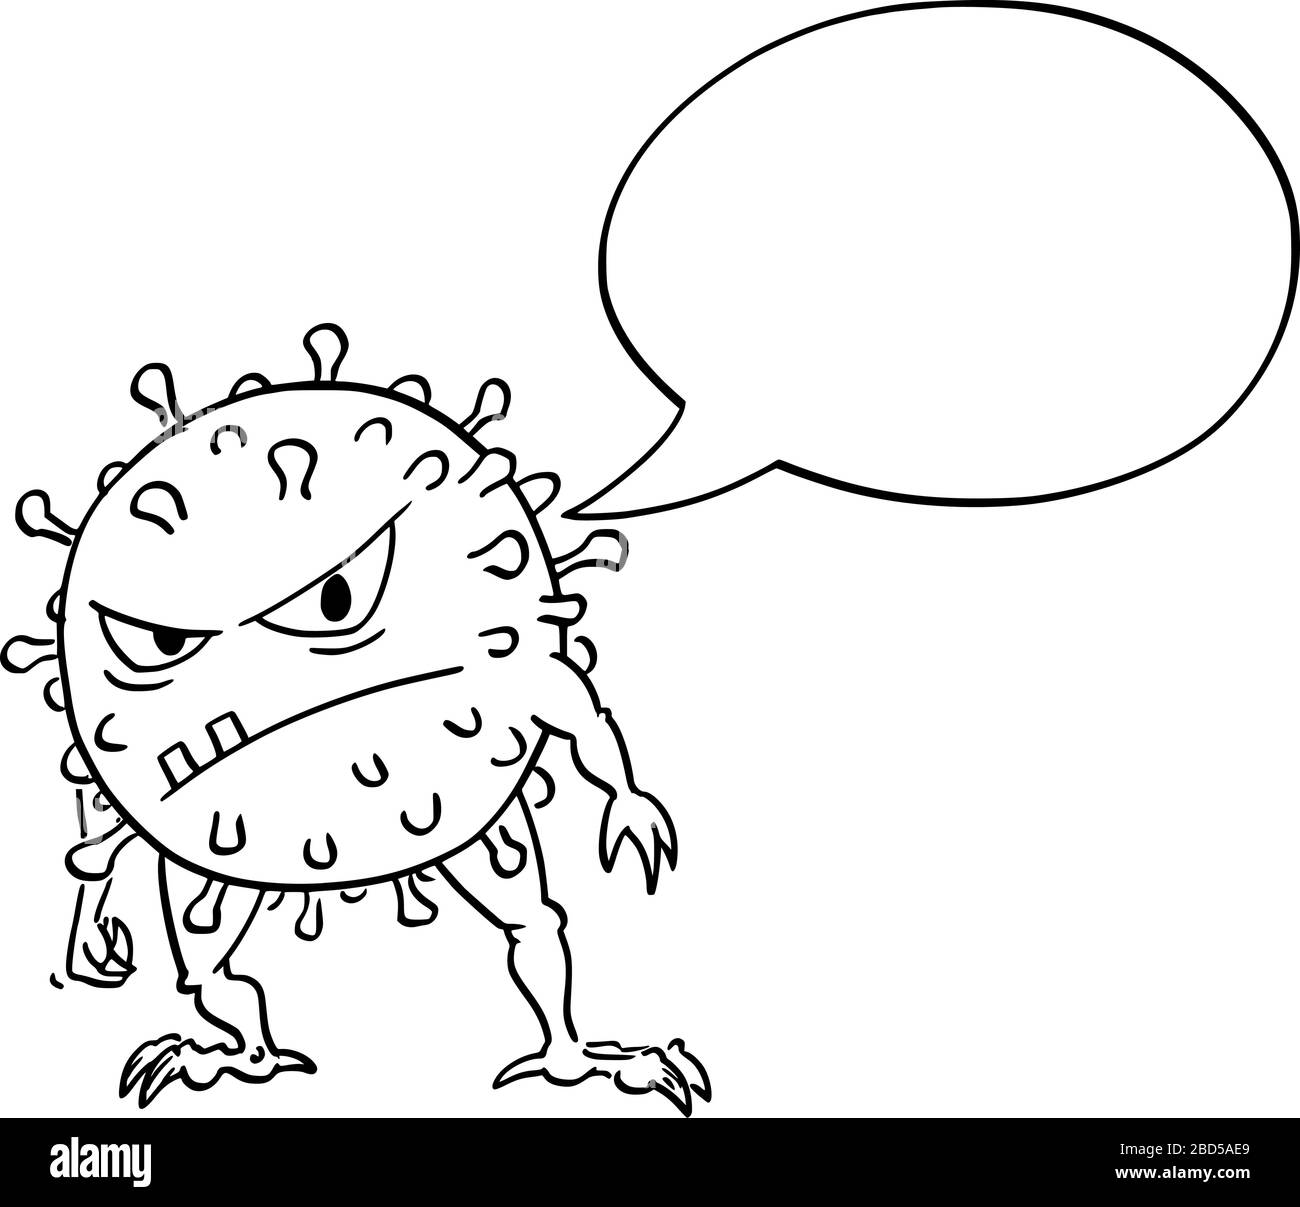 Vektor-Cartoon lustige Illustration des komischen, verrückten Coronavirus COVID-19-Virus-Monsters mit leerer Sprechblase, die etwas sagt. Stock Vektor